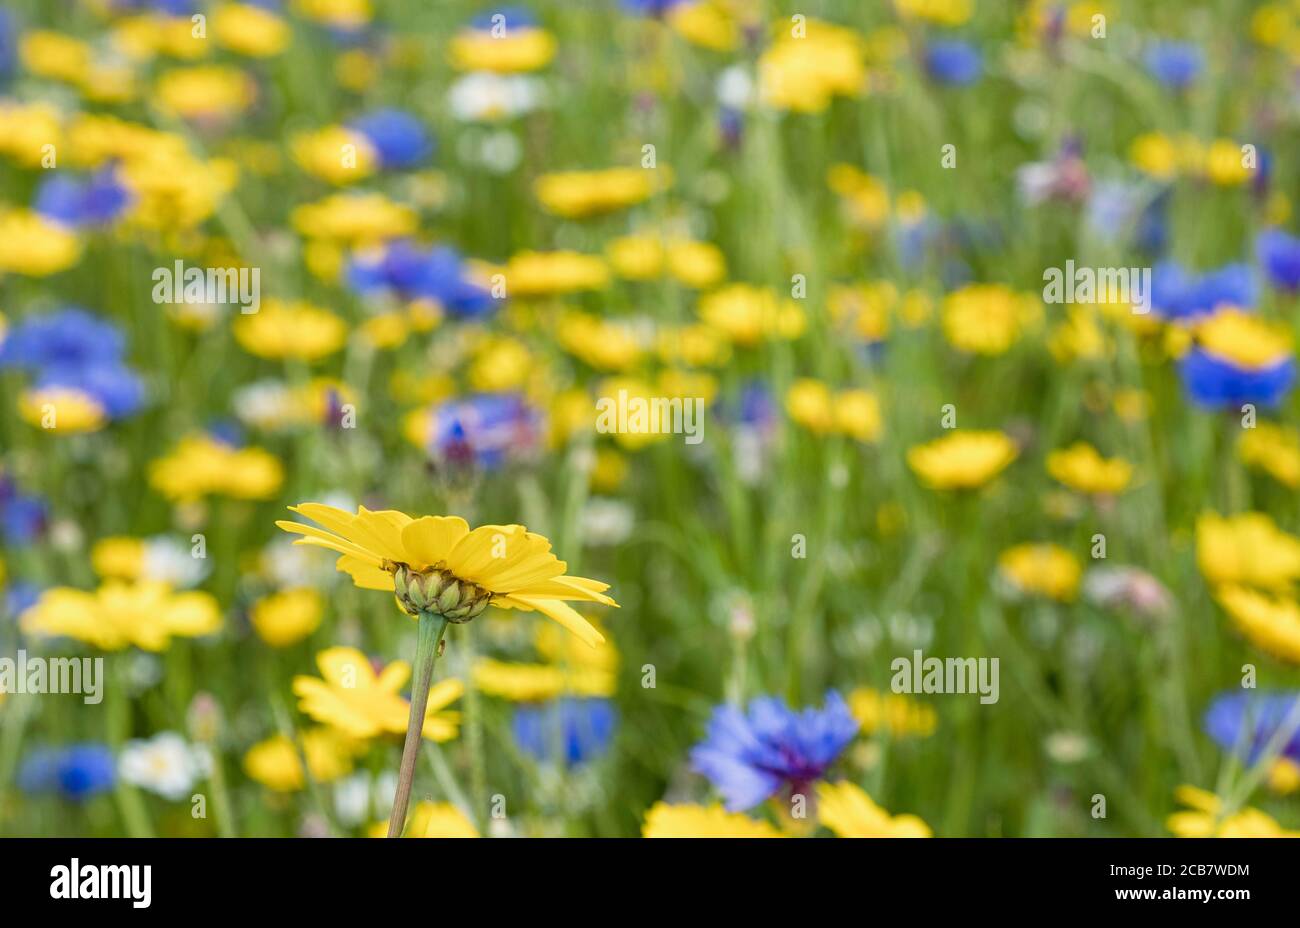 Gänseblümchen, Gelbe Blume wächst im Freien in einem Feld von englischen Wiesenblumen, einschließlich Bachelor-Knöpfe, Kornblumen und verschiedene Sorten von Daisen. Stockfoto